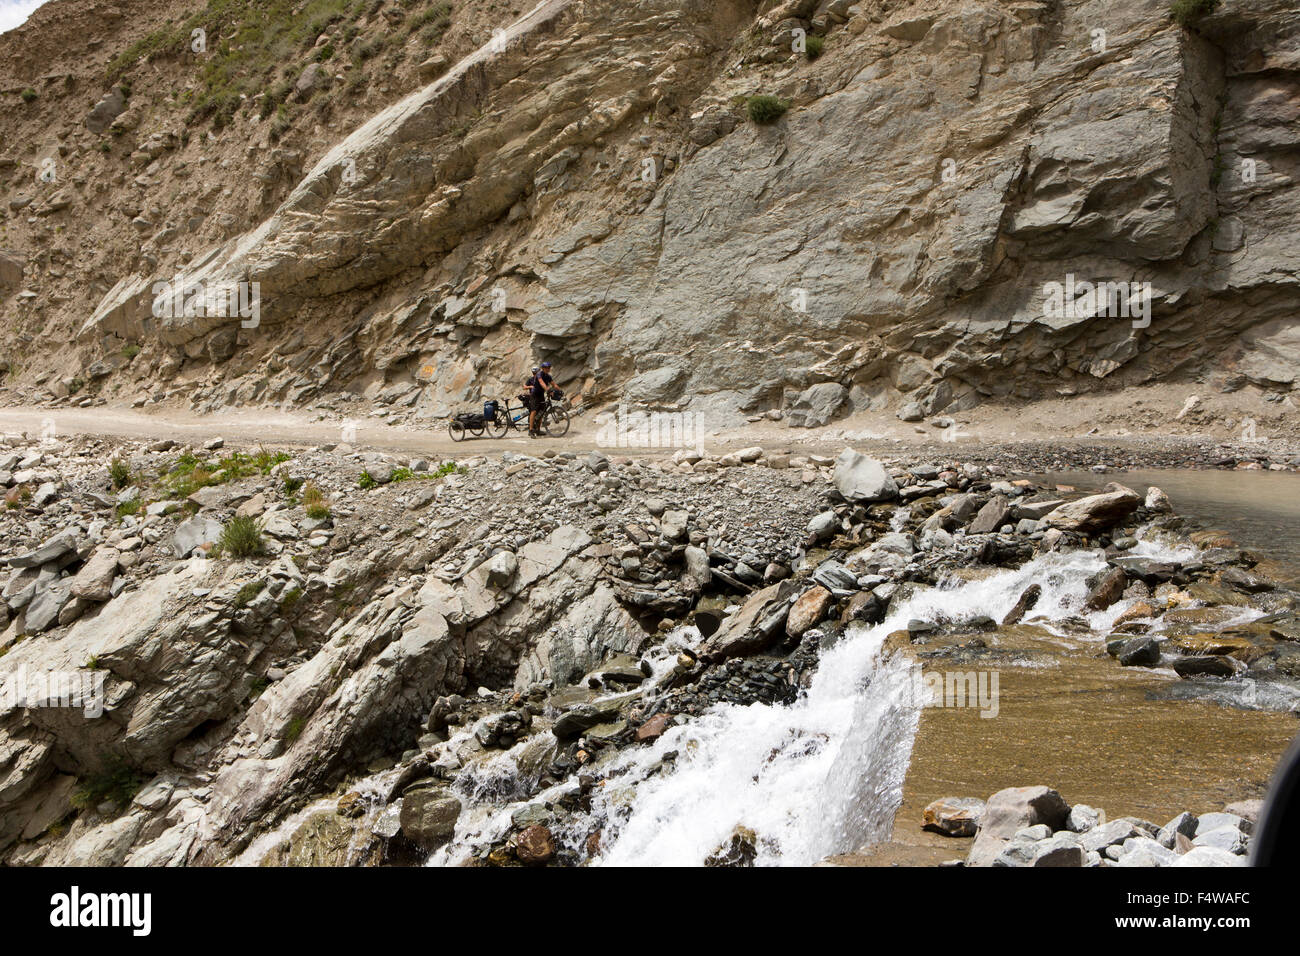 L'Inde, l'Himachal Pradesh, Lahaul et Spiti, Darcha, ouest de cyclistes en tandem avec la pause avant de traverser stream Banque D'Images